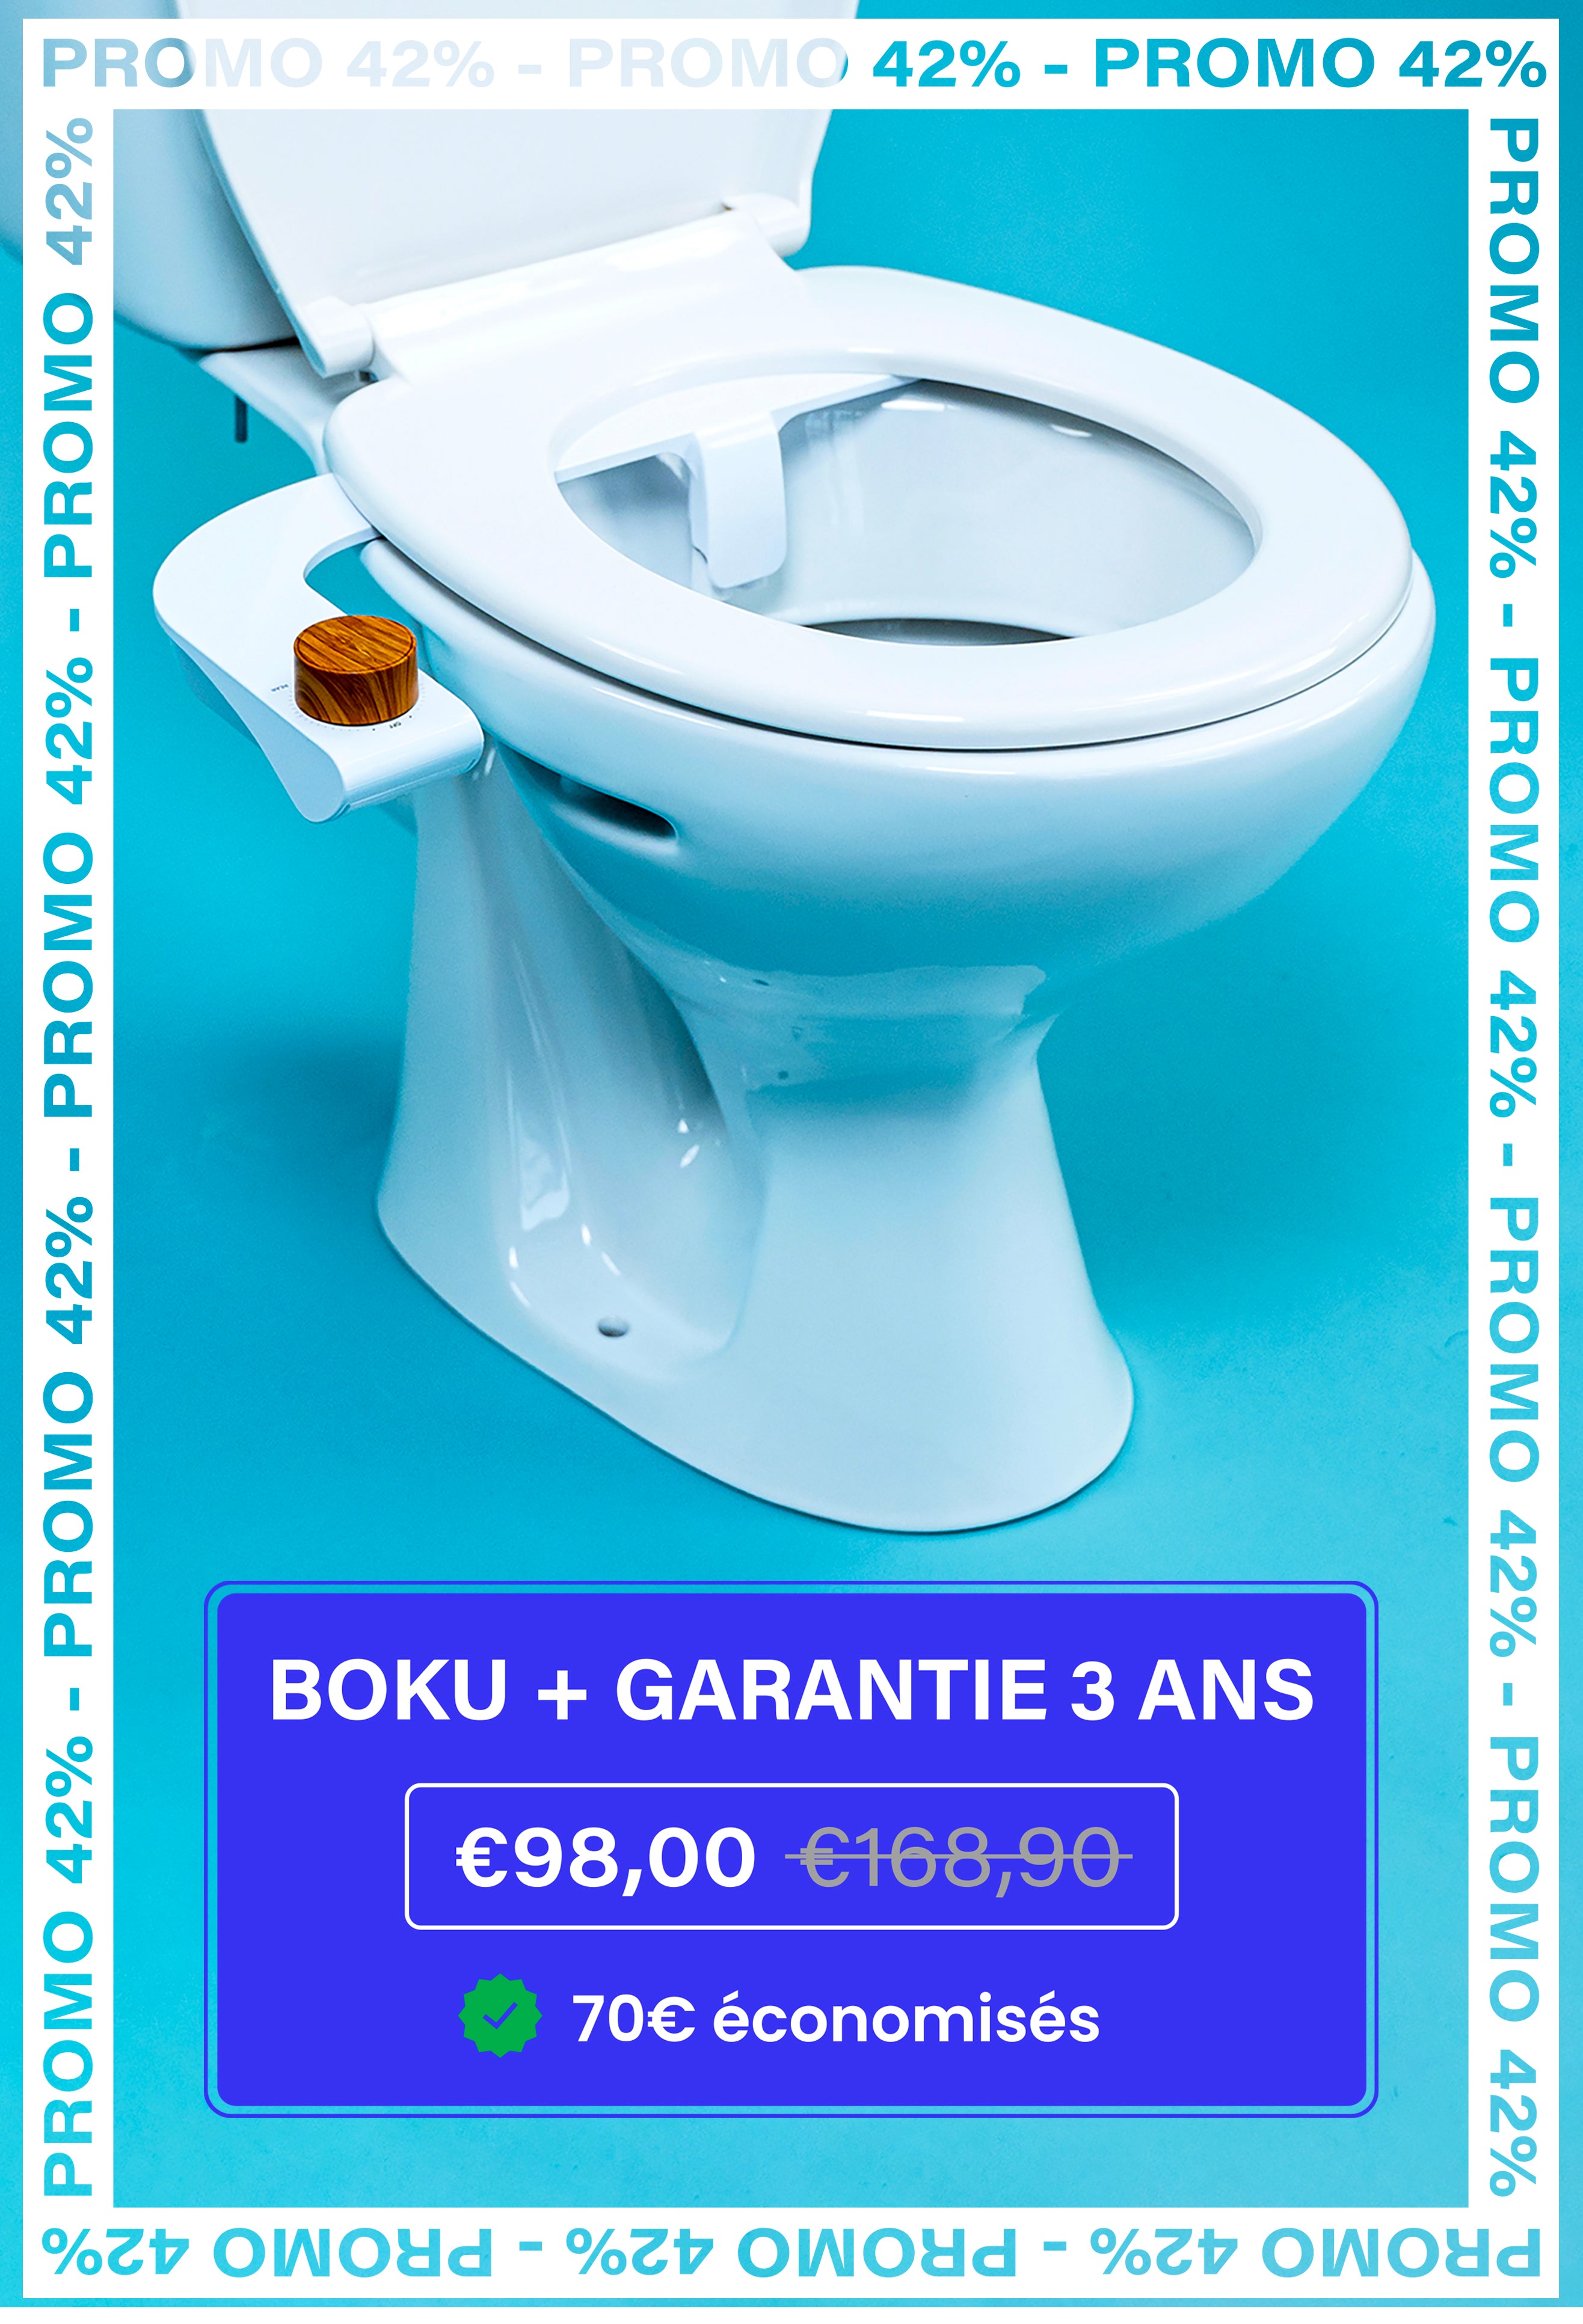 Boku - Les toilettes japonaises, à la française!